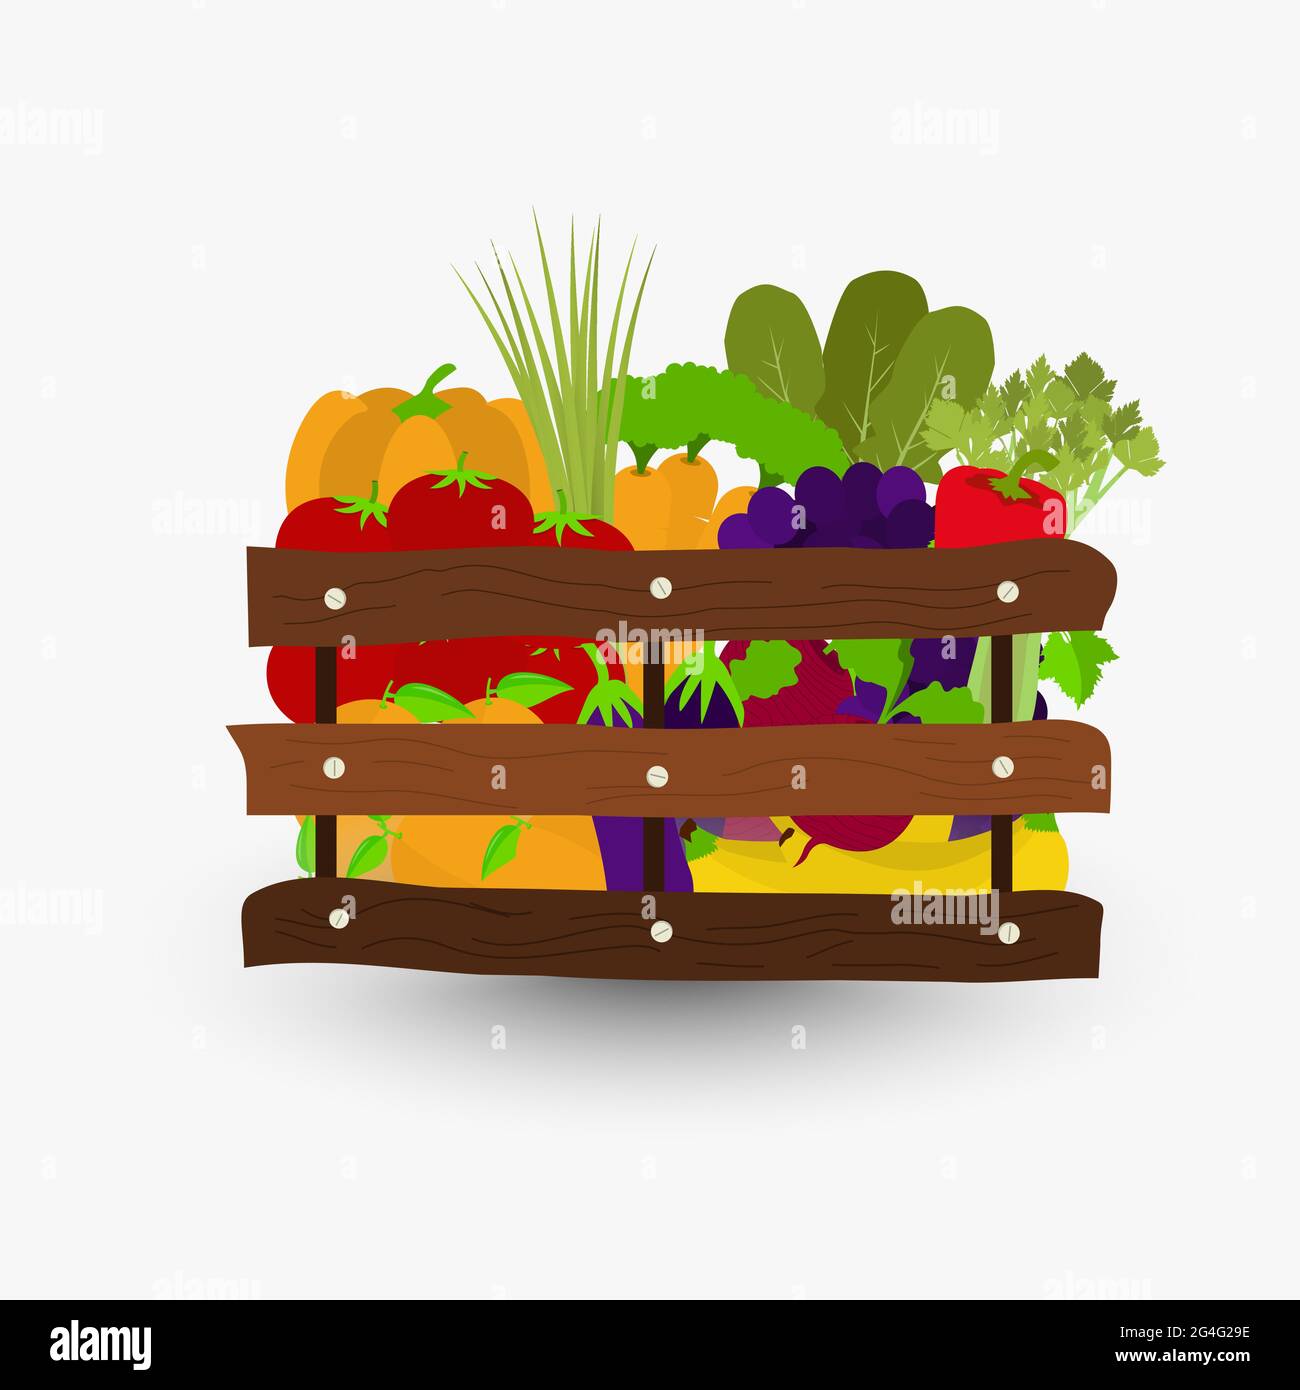 Obst und Gemüse in einer Holzkiste. Holzkisten mit Tomaten, Orangen, Trauben, Karotten, Bananen, Aubergine, Rüben, grüne Zwiebeln, Sellerie, A Stock Vektor